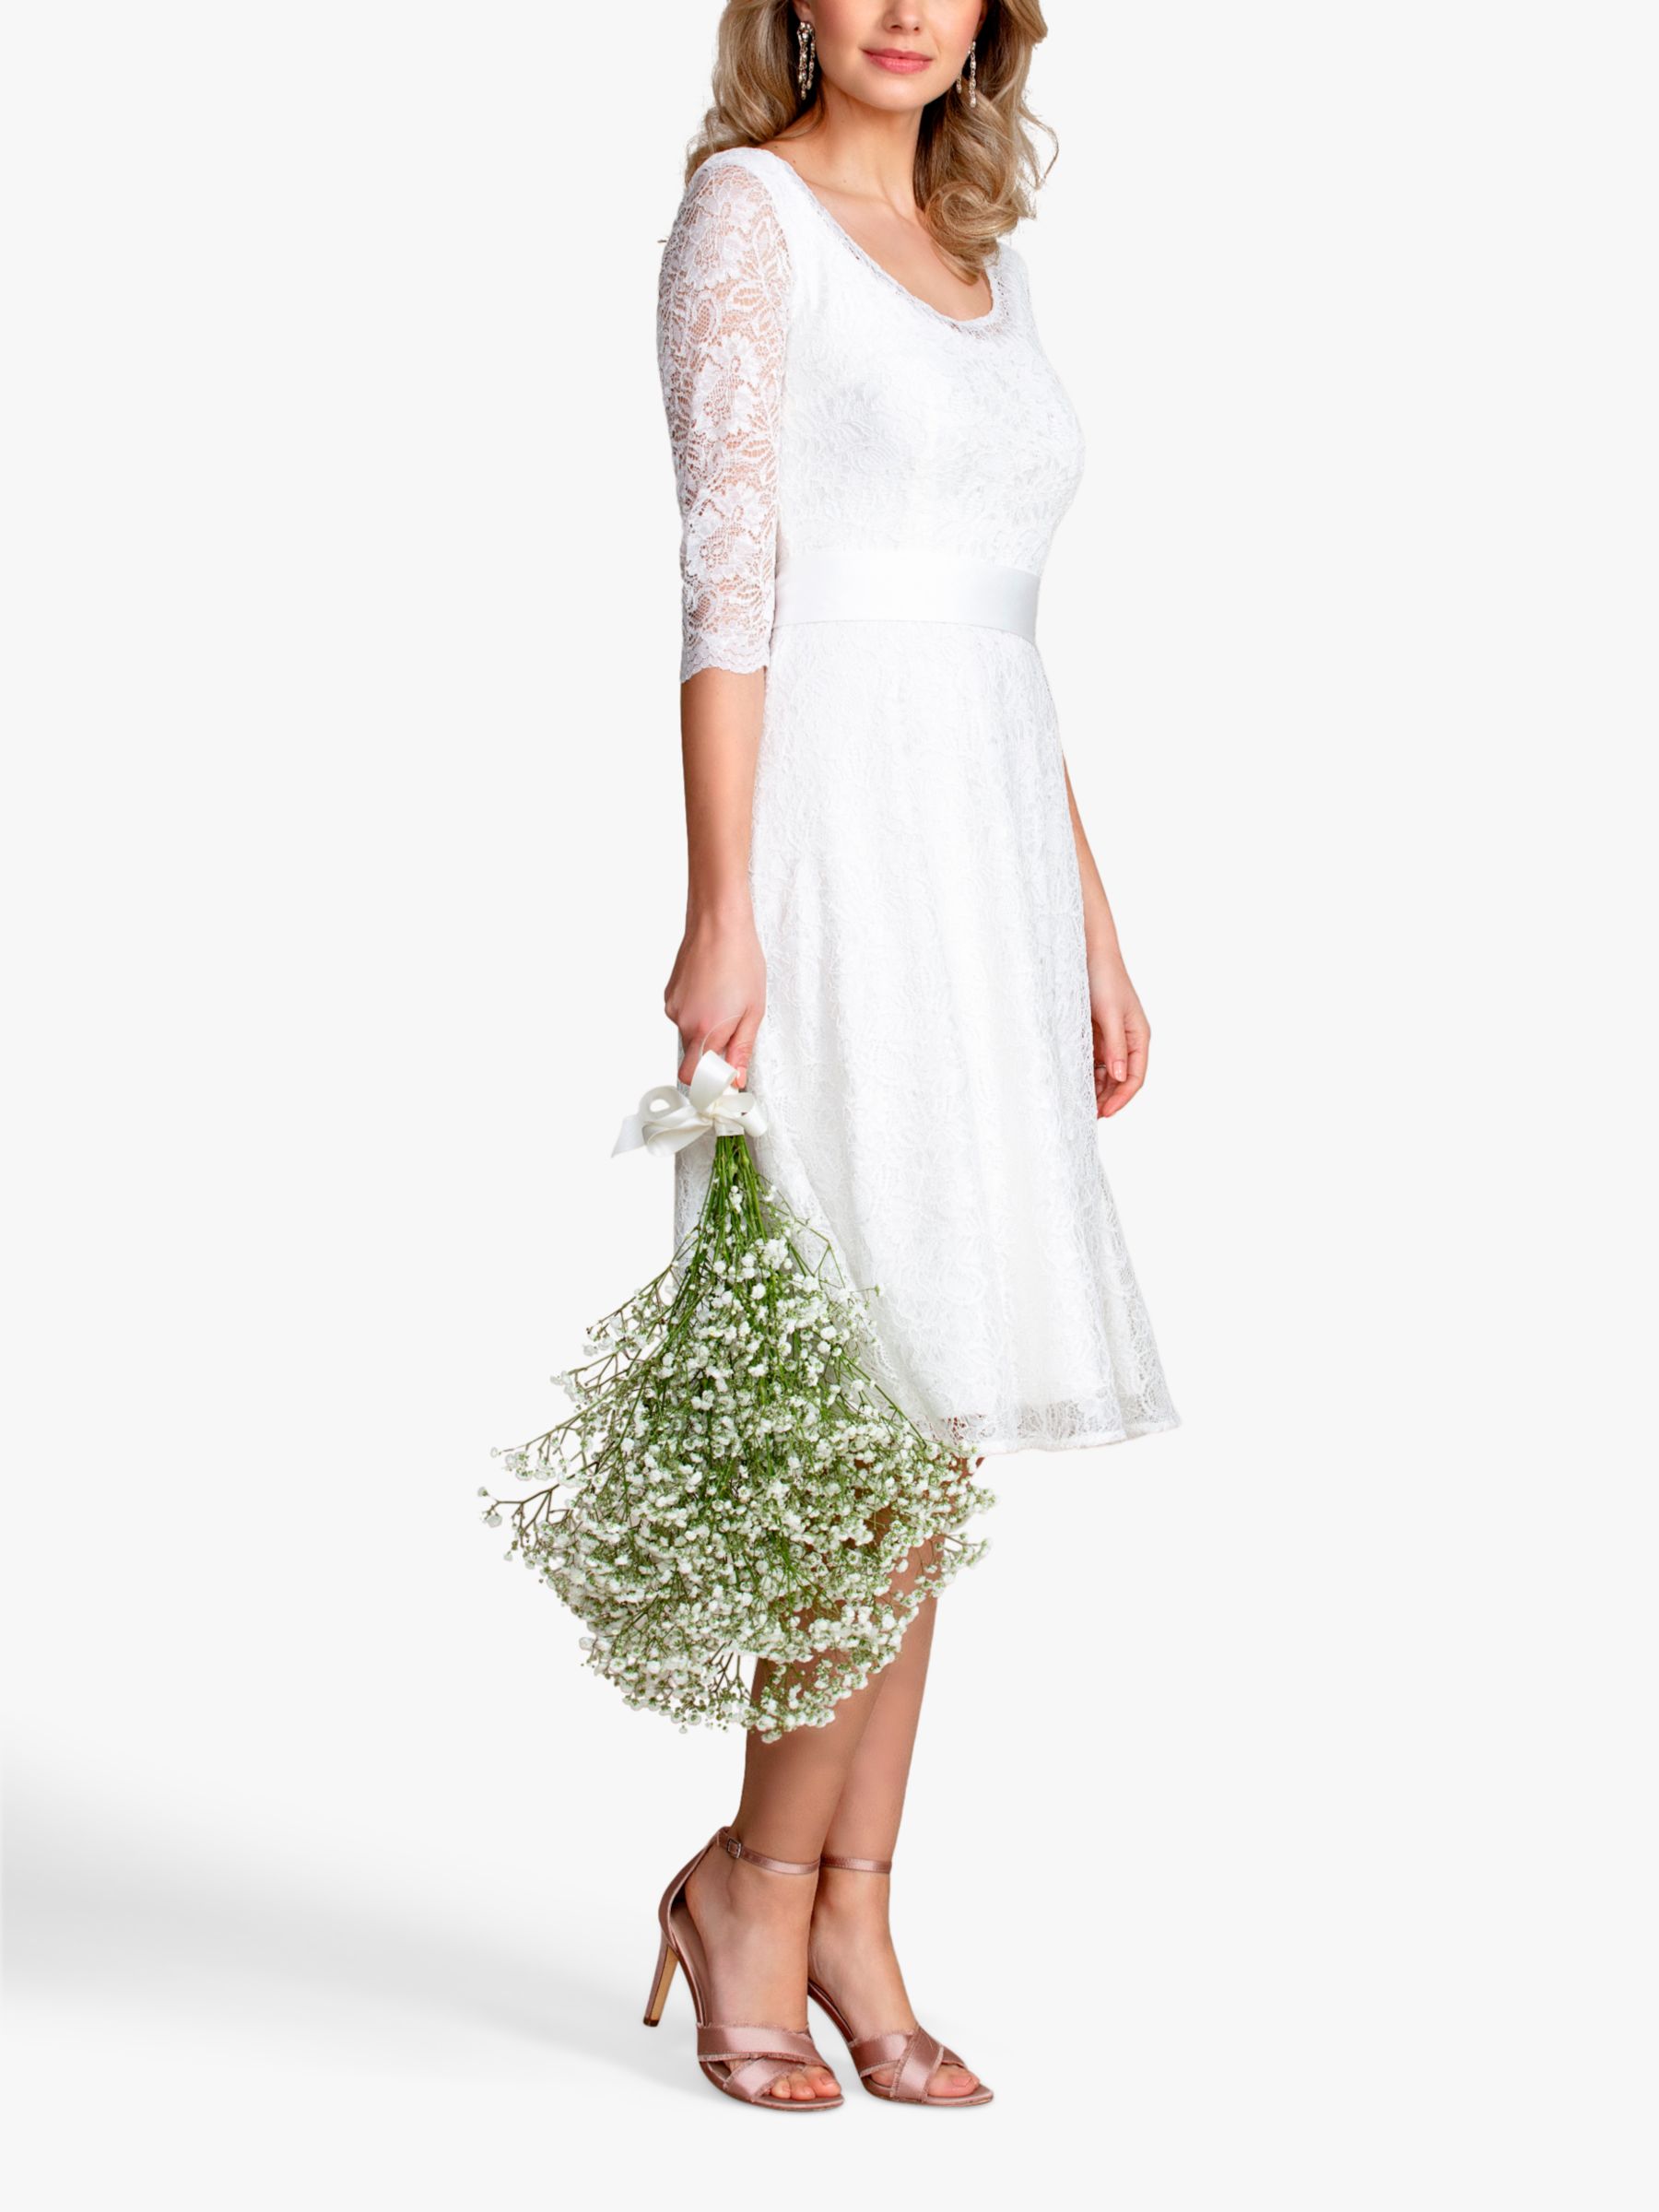 Buy Alie Street Arabella Floral Lace Wedding Dress, Ivory Online at johnlewis.com